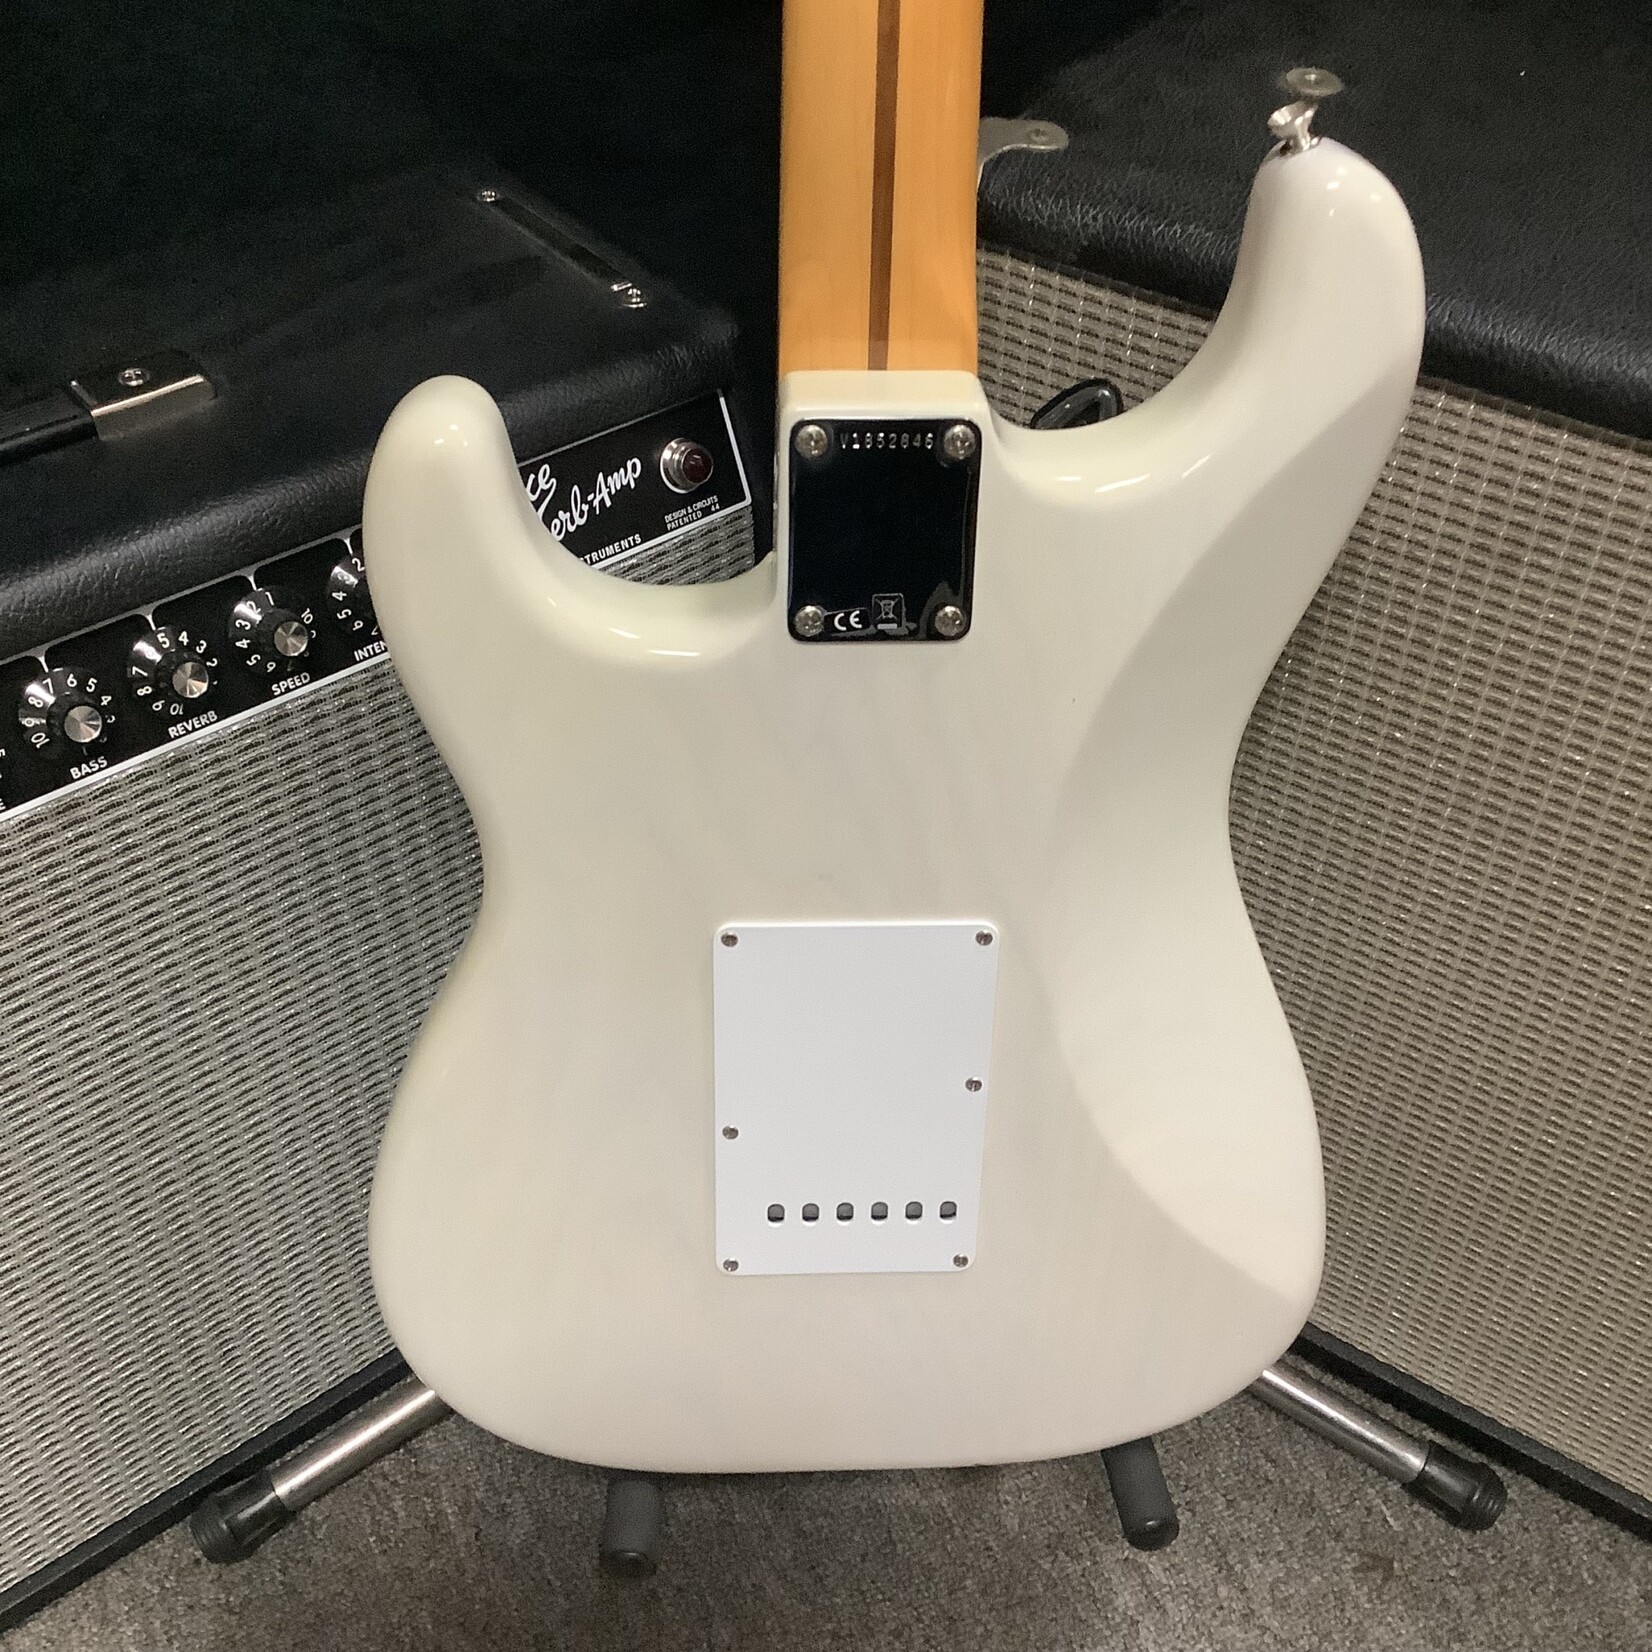 Fender 2018 Fender Strat USA See Through Blonde